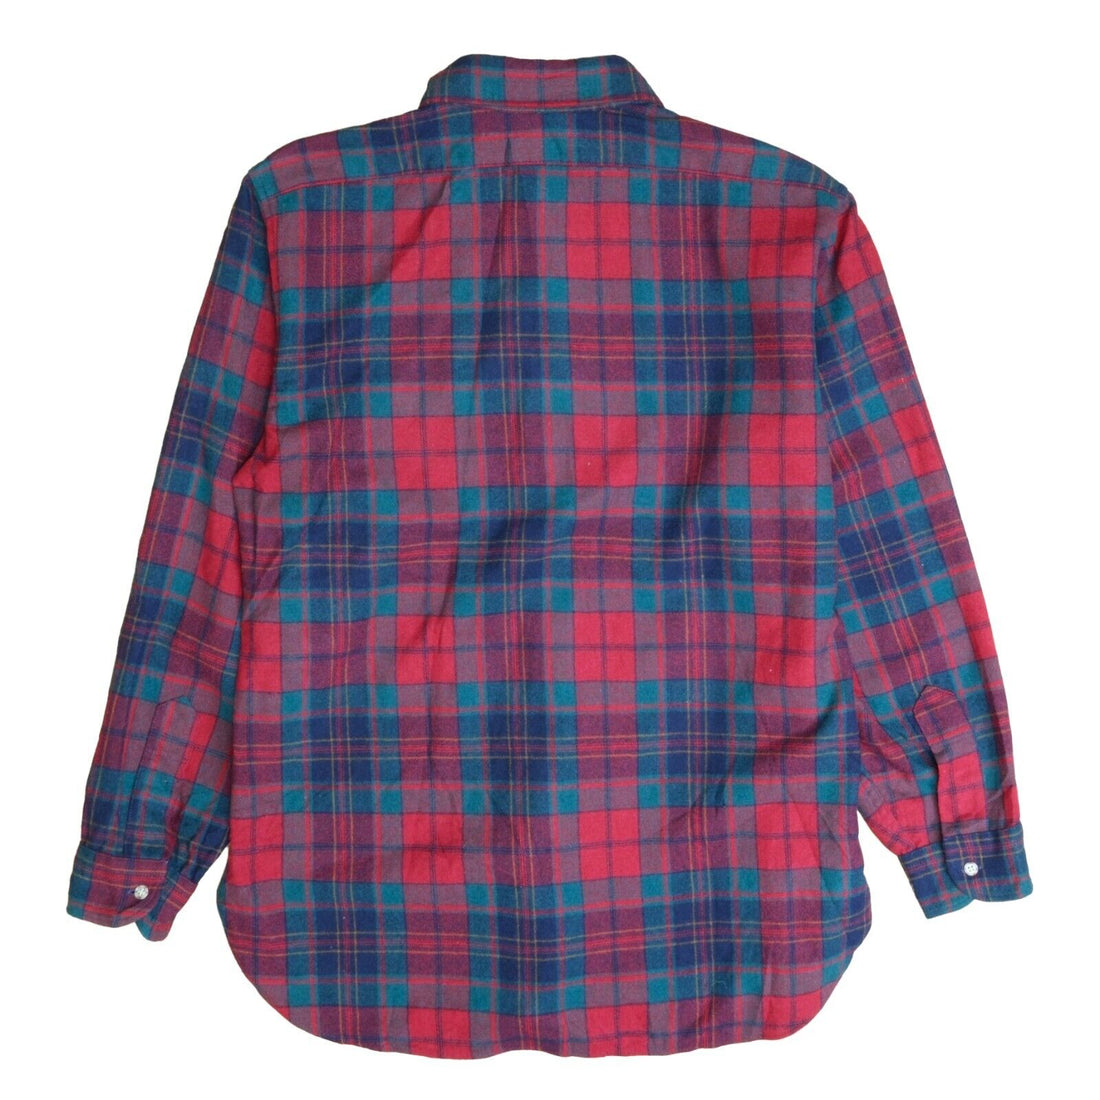 Vintage Pendleton Lodge Wool Button Up Shirt Size Large Red Tartan Plaid